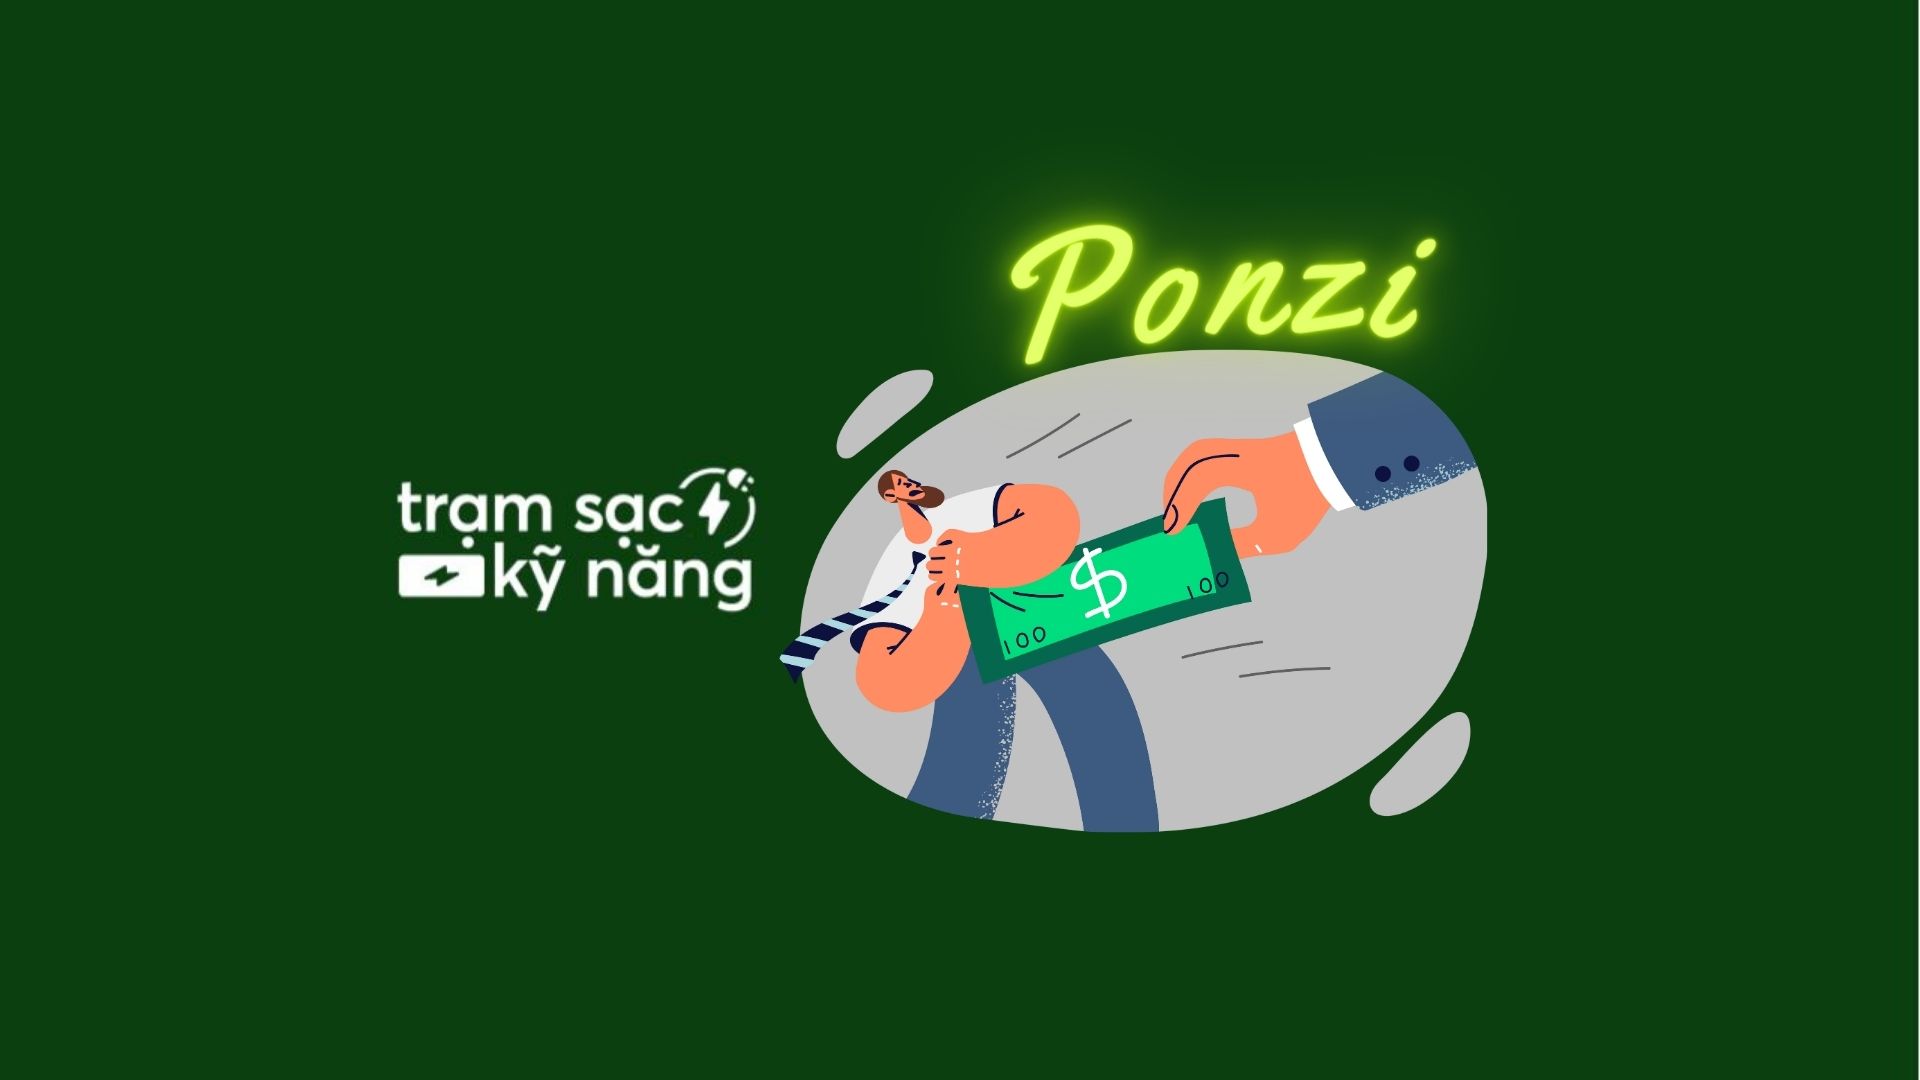 ponzi là gì